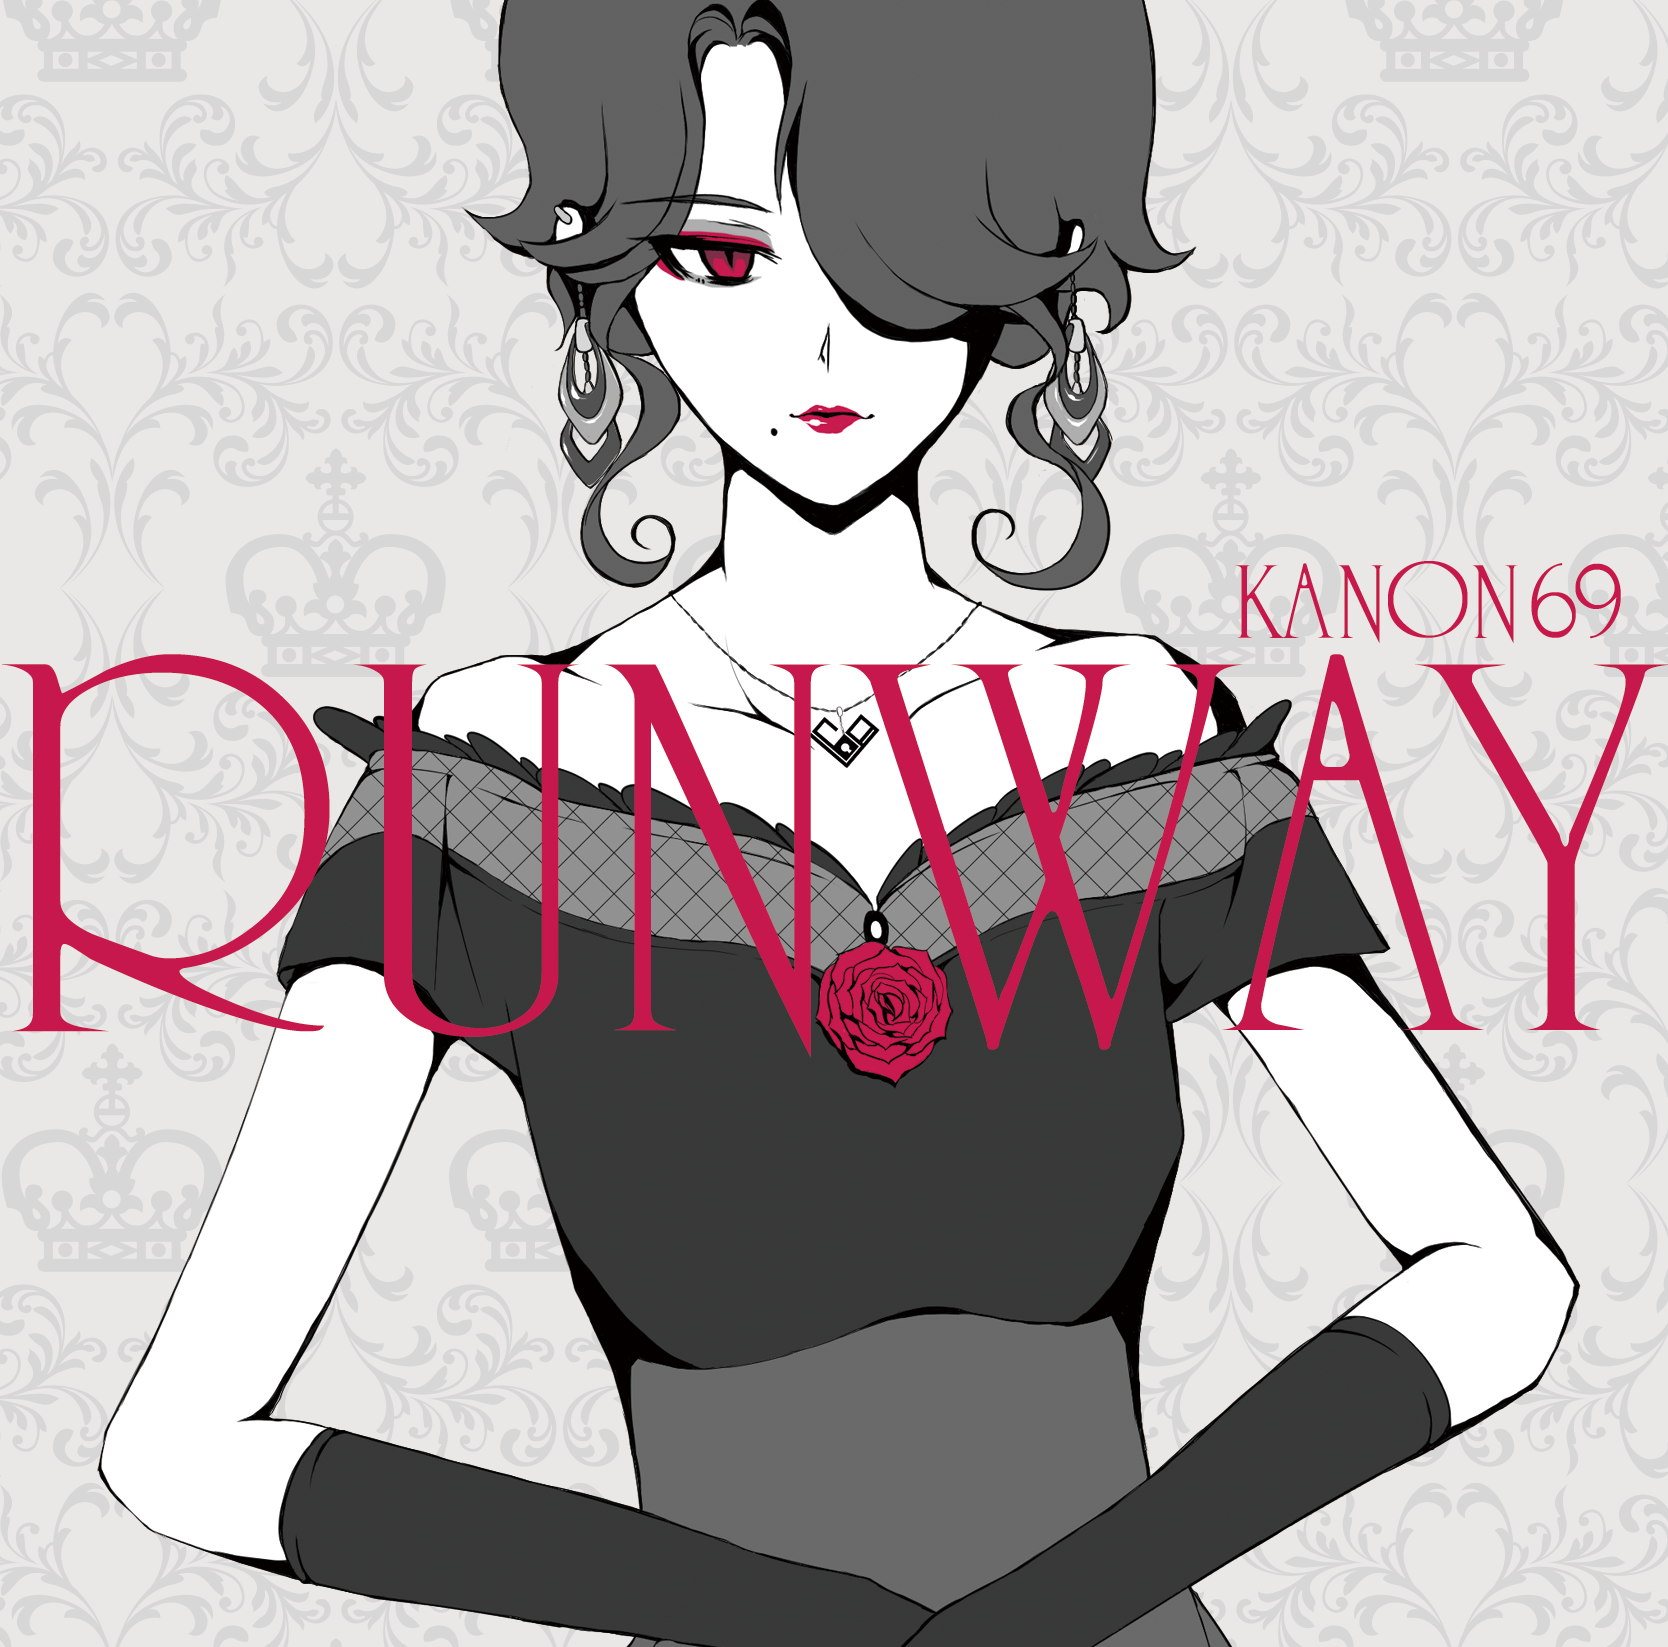 2nd album "RUNWAY" #3